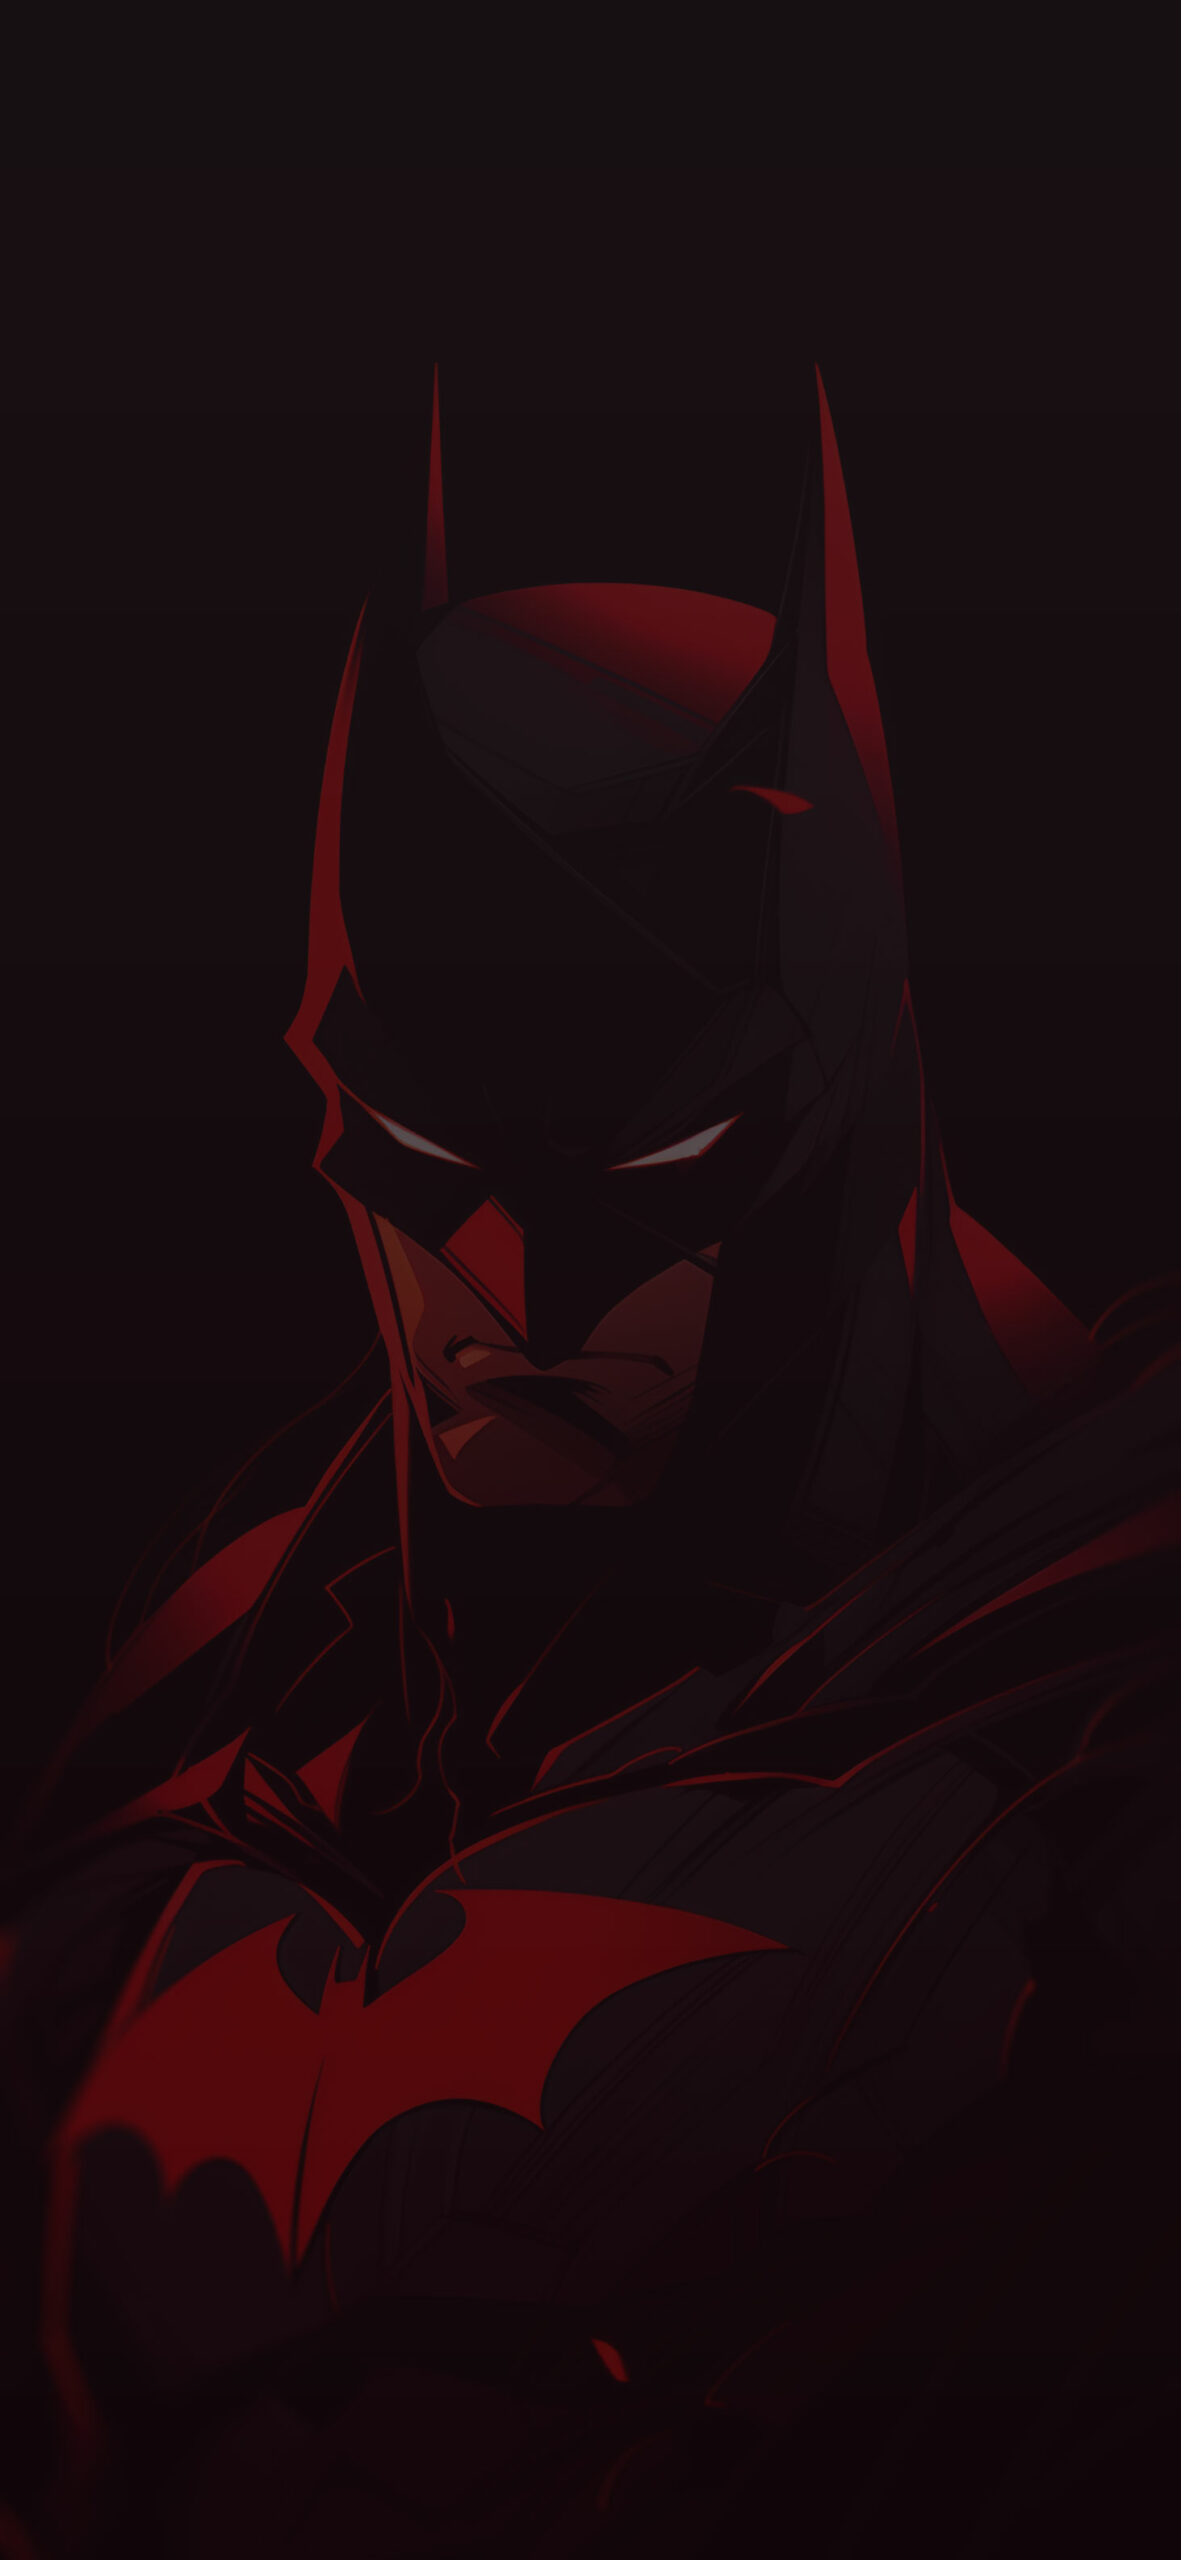 Black & red batman wallpaper DC batman wallpaper for iphone